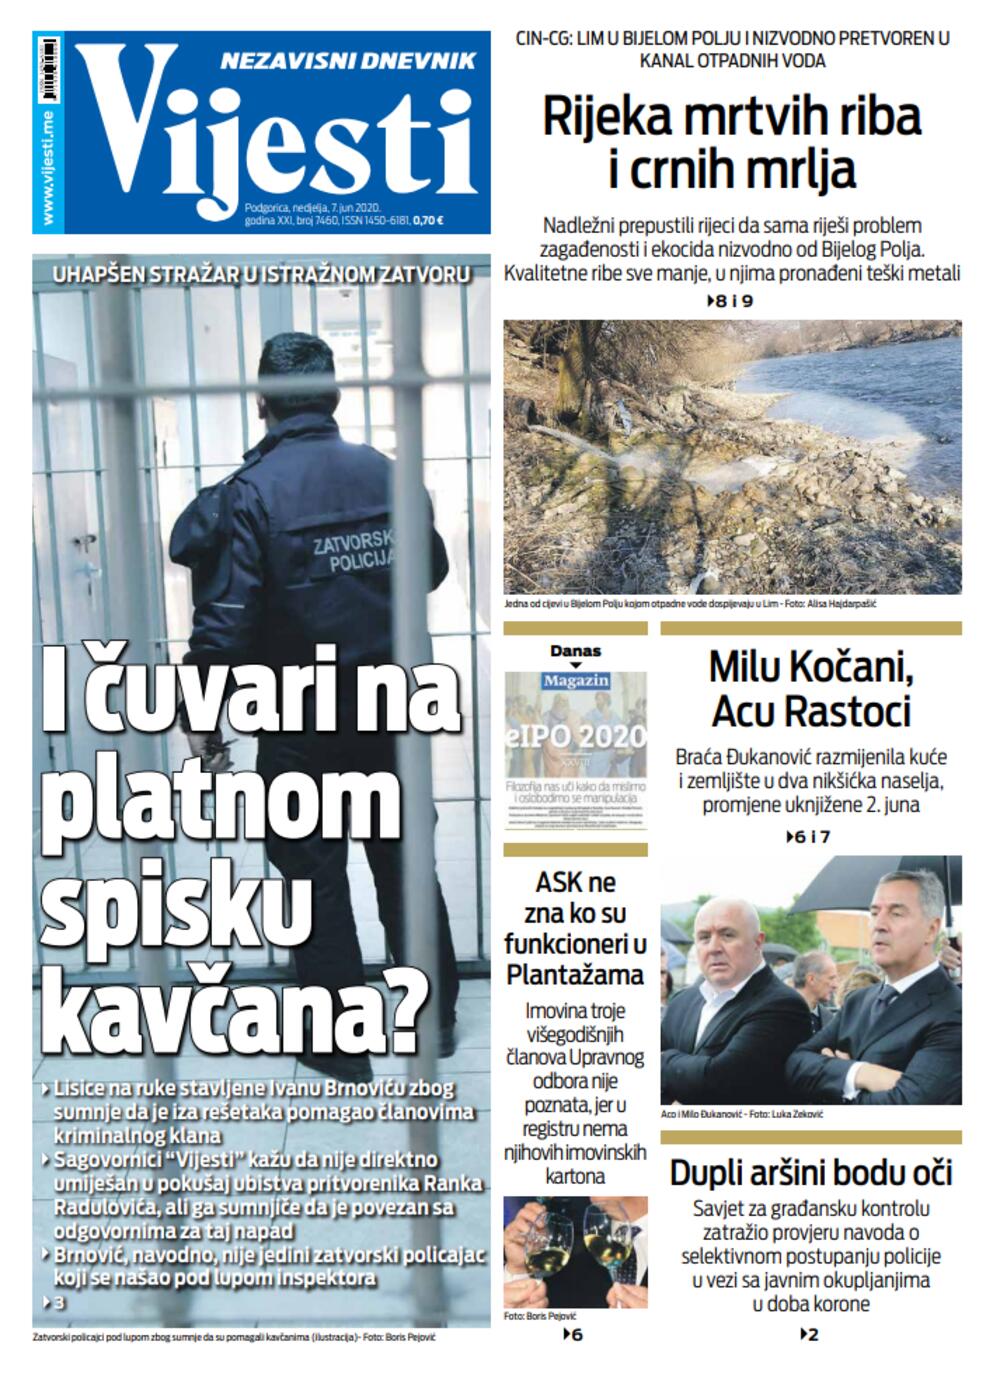 Naslovna strana "Vijesti" za 7. jun 2020., Foto: Vijesti